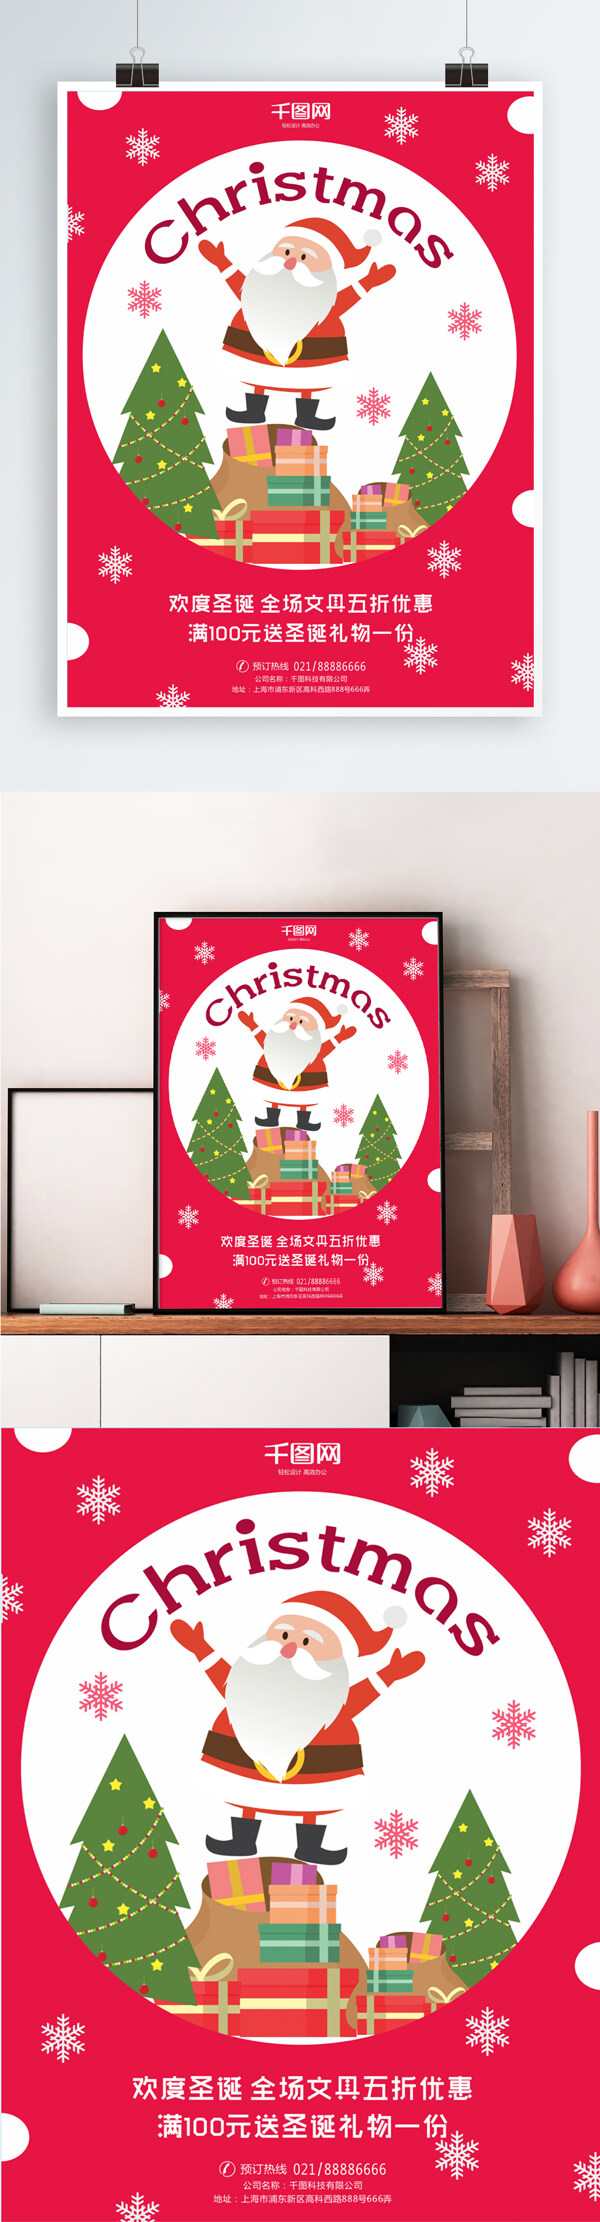 文具店圣诞节可爱宣传海报